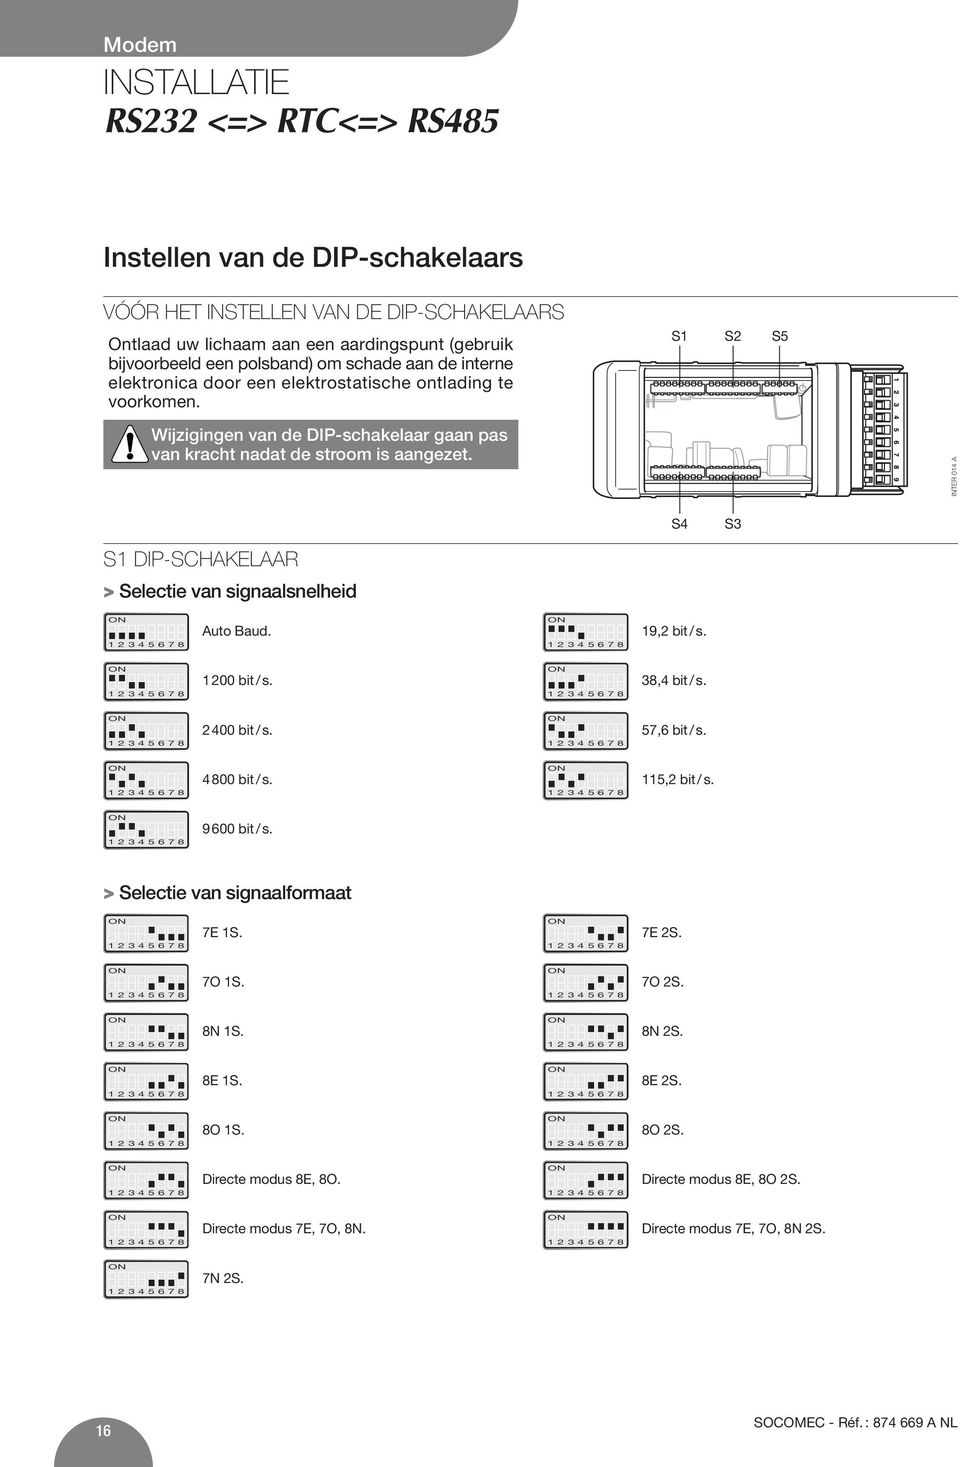 INTER 014 A S4 S3 S1 DIP-SCHAKELAAR > Selectie van signaalsnelheid Auto Baud. 19,2 bit / s. 1 200 bit / s. 38,4 bit / s. 2 400 bit / s. 57,6 bit / s. 4 800 bit / s. 115,2 bit / s.